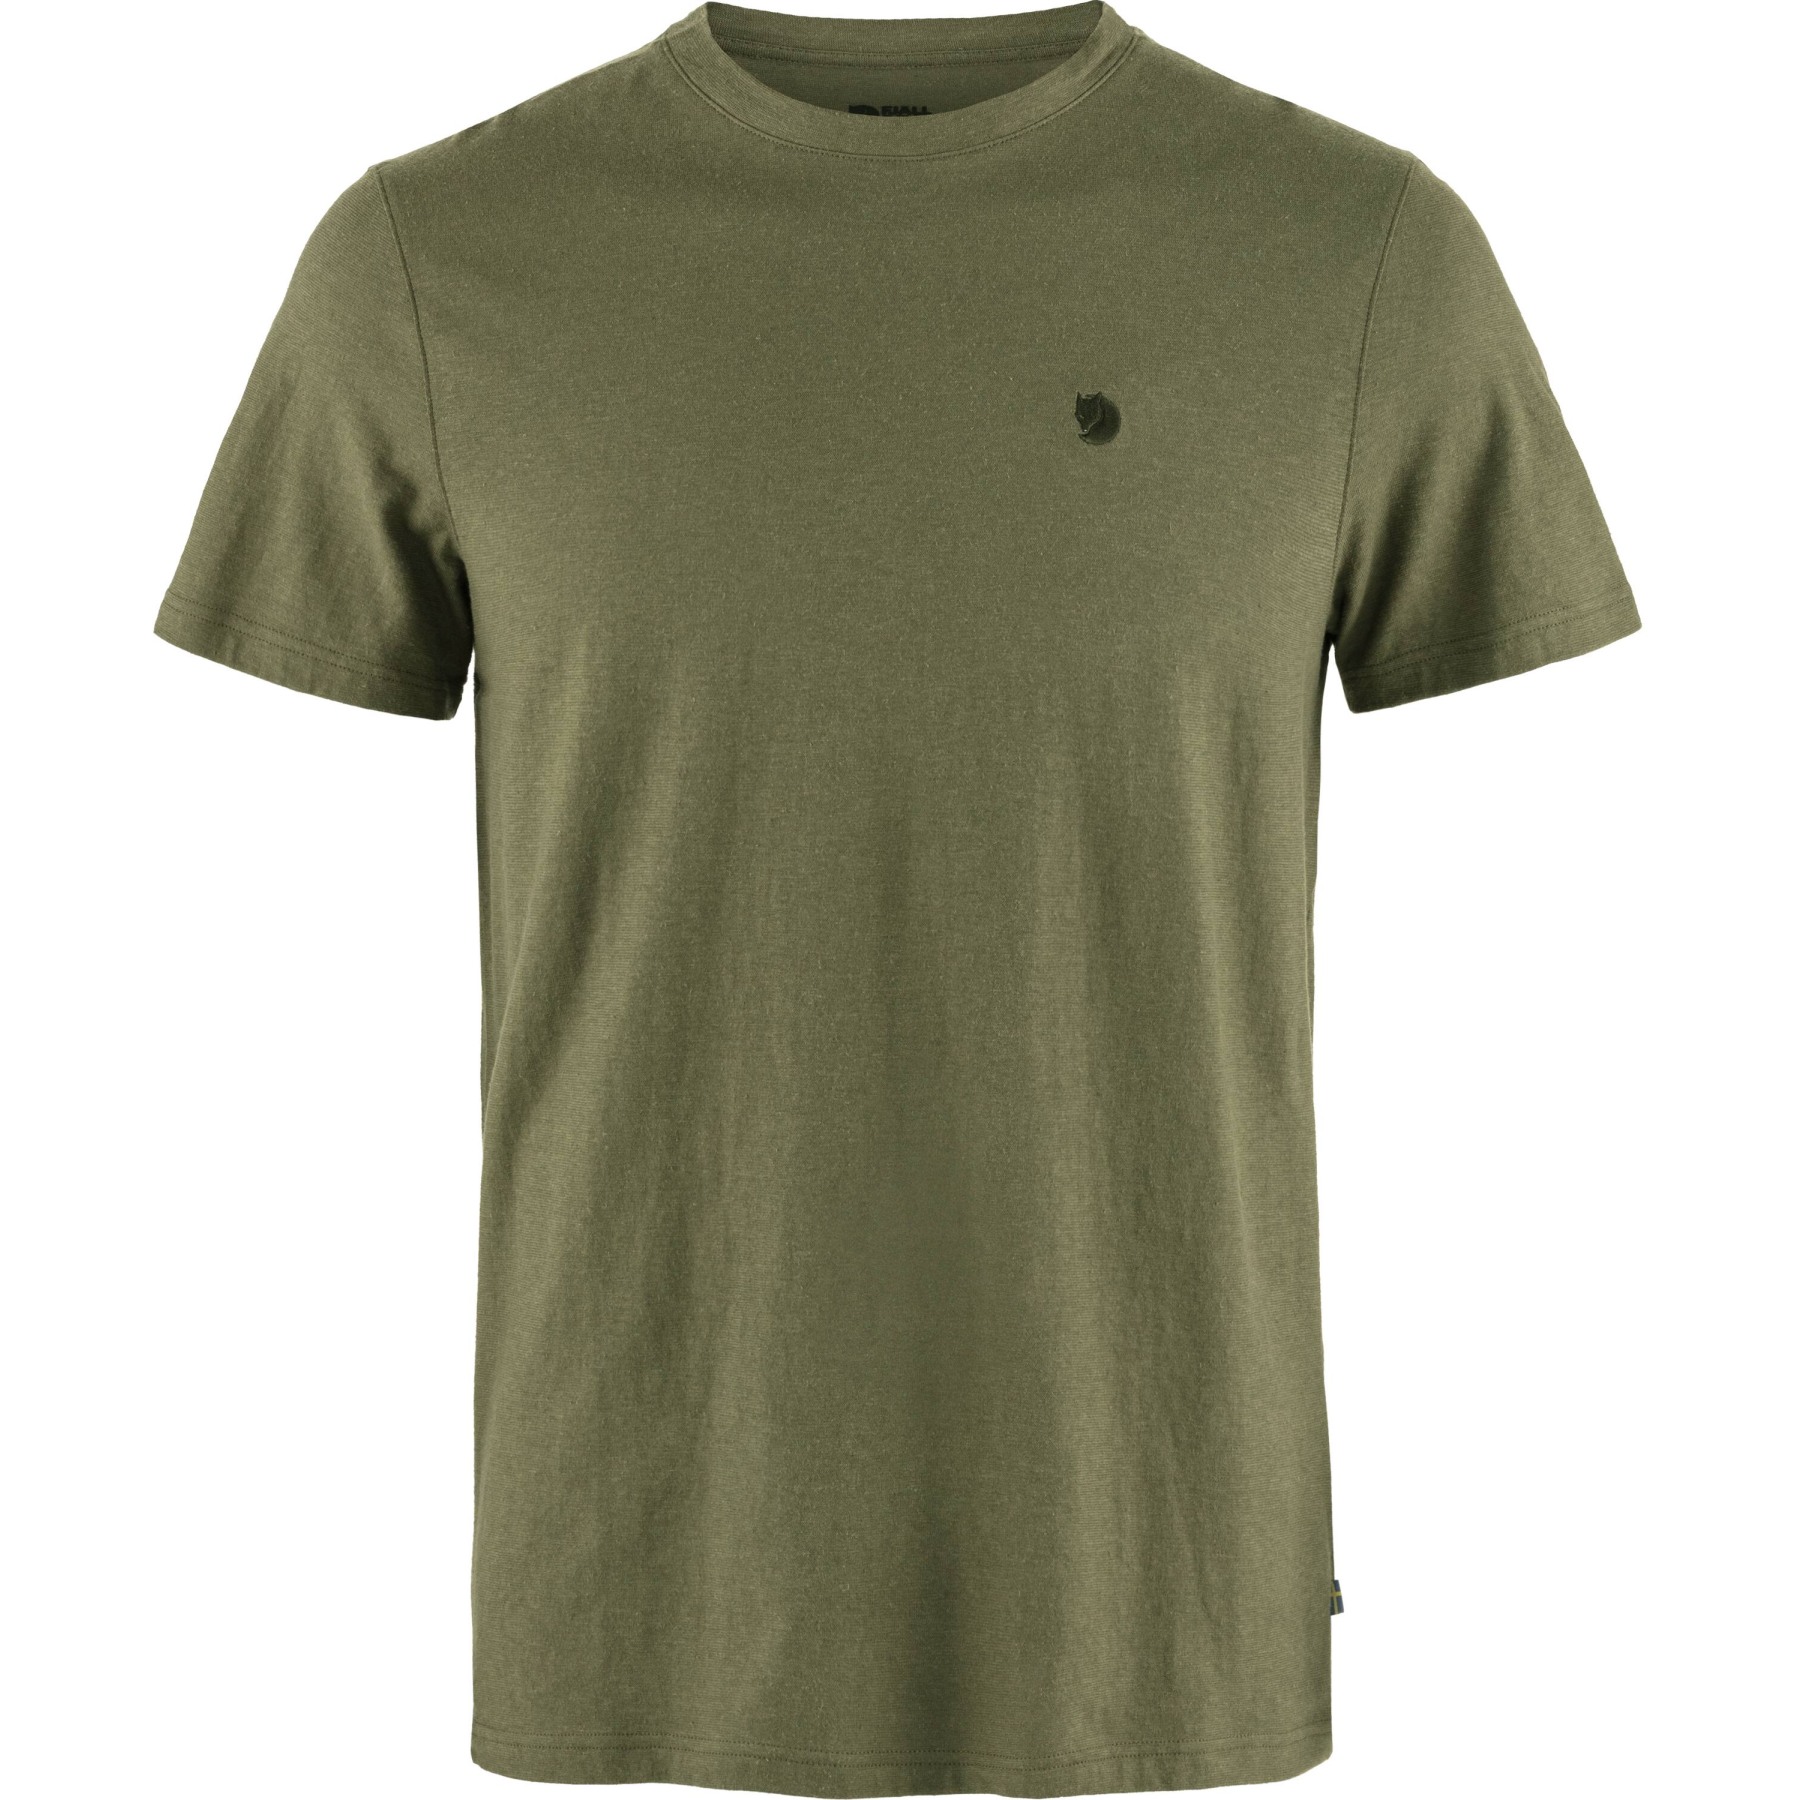 Produktbild von Fjällräven Hemp Blend T-Shirt Herren - grün